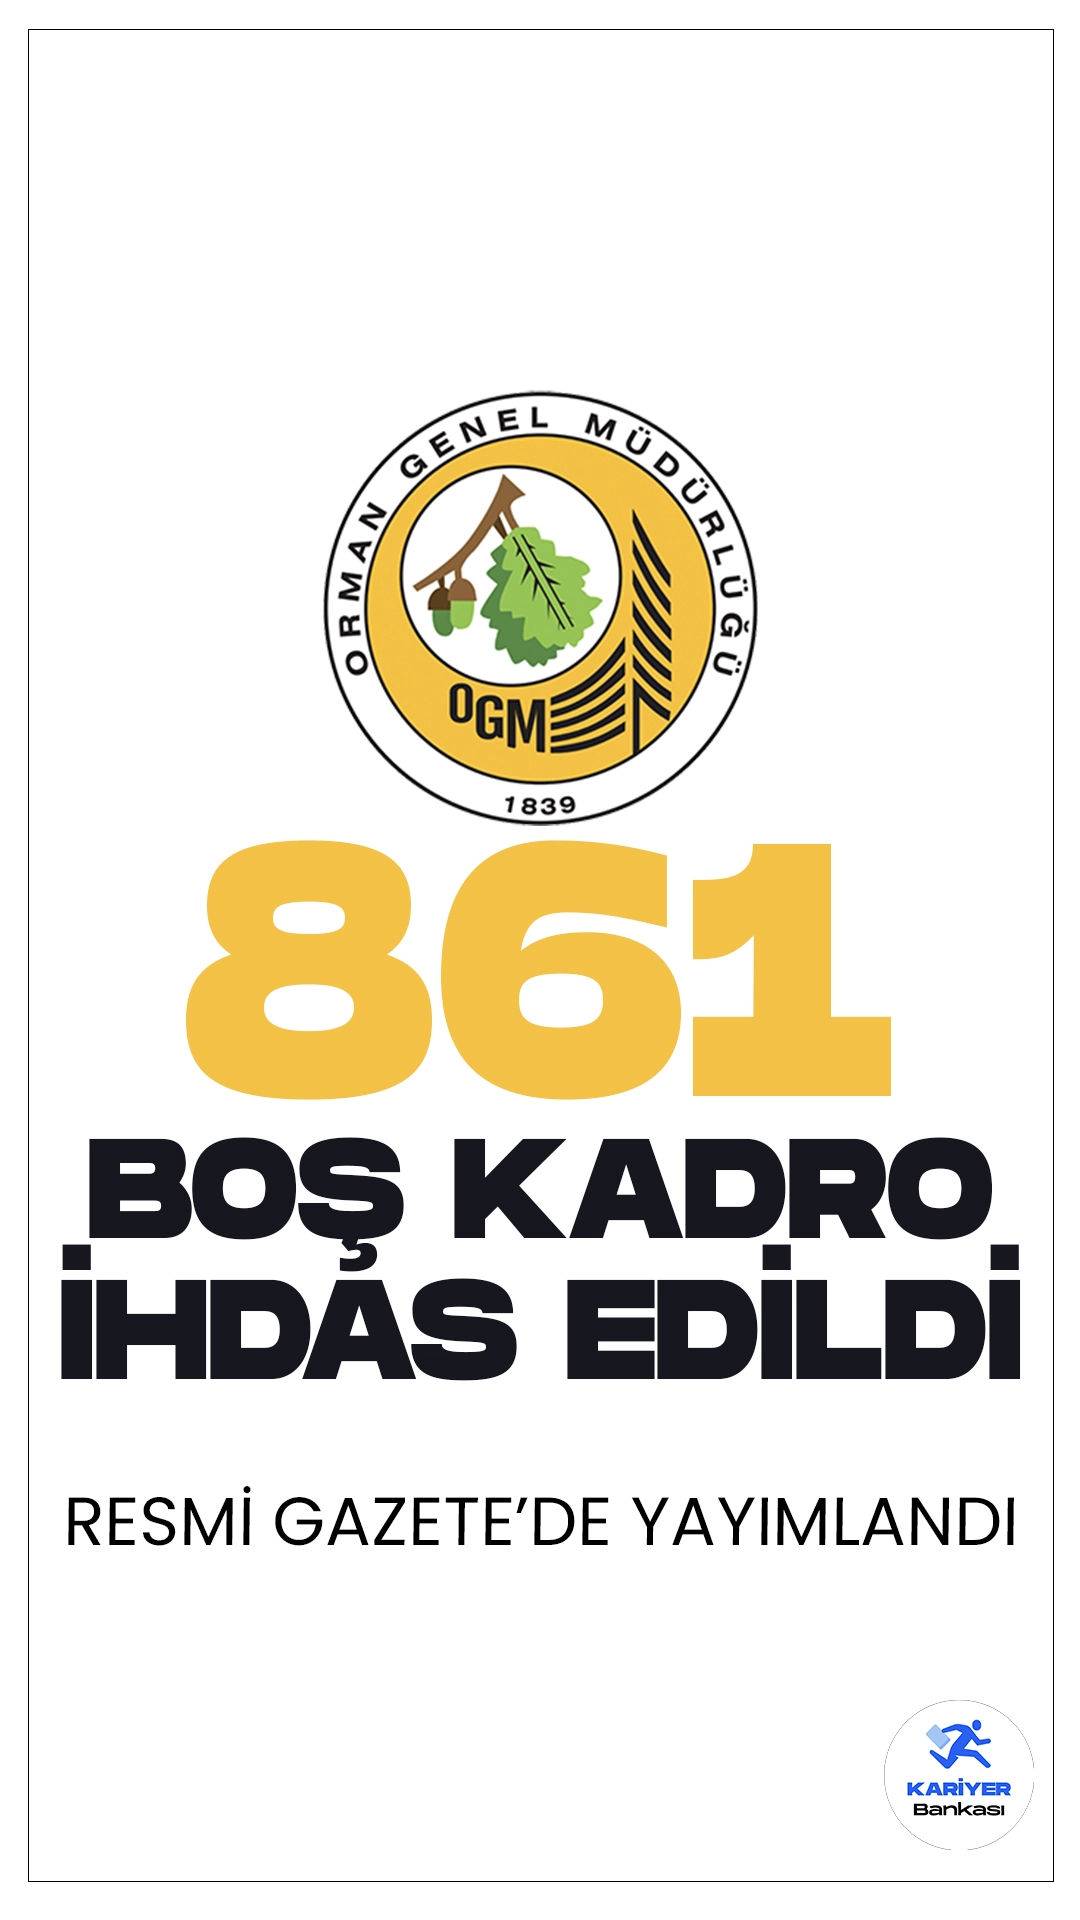 Orman Genel Müdürlüğüne (OGM) 861 Boş Kadro İhdası Resmi Gazete'de yayımlandı.27 Mart 2024 tarihli Resmi Gazete’de yayımlanan duyuruya göre, Cumhurbaşkanı Recep Tayyip Erdoğan’ın imzasıyla Orman Genel Müdürlüğüne (OGM) 861 boş kadro ihdası gerçekleştirildi.